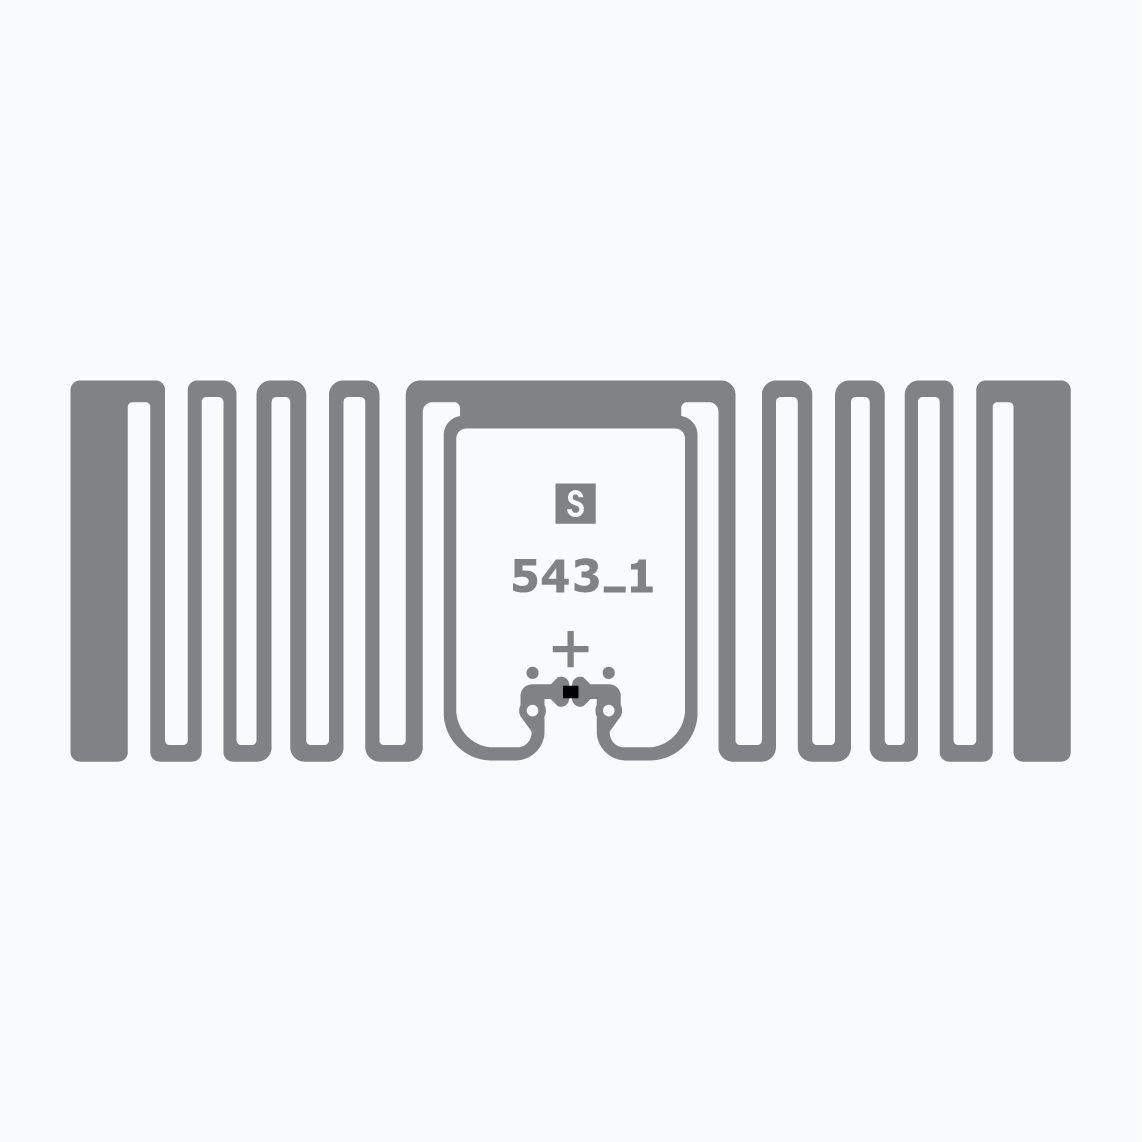 UHF RFID Inlay: Miniweb UCODE 9XM